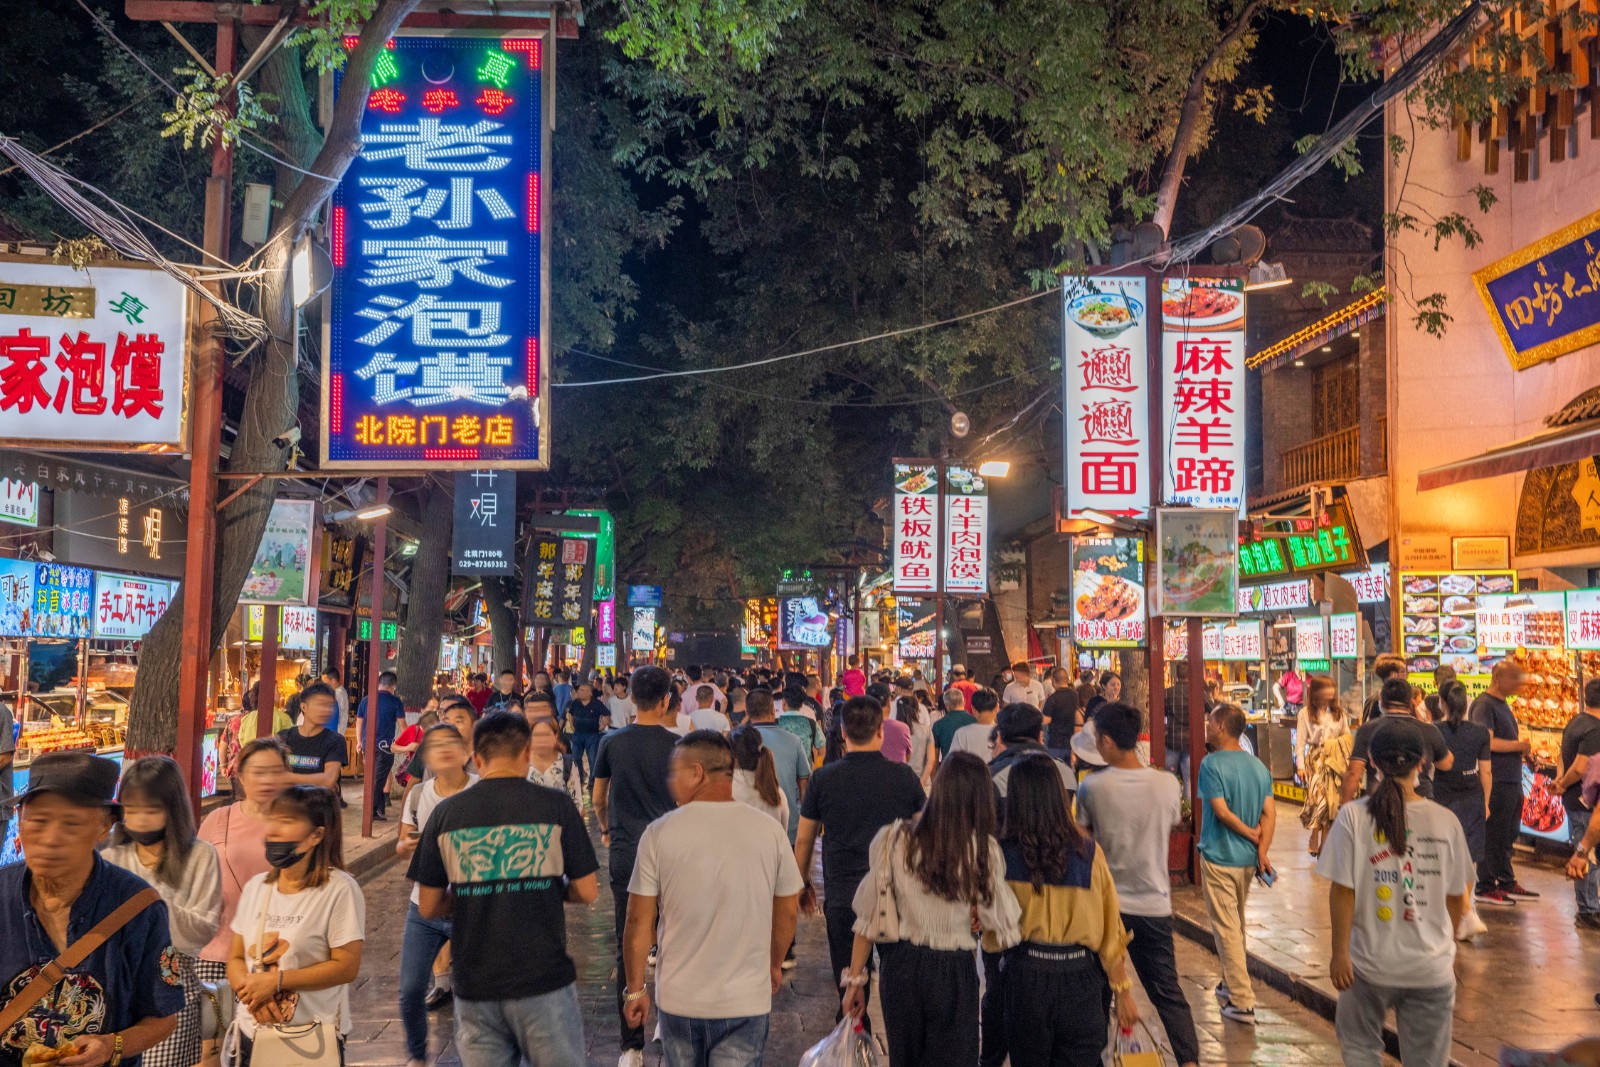 云南10家旅行社被重点监管 多地发布“红黑榜” 促旅游市场秩序规范